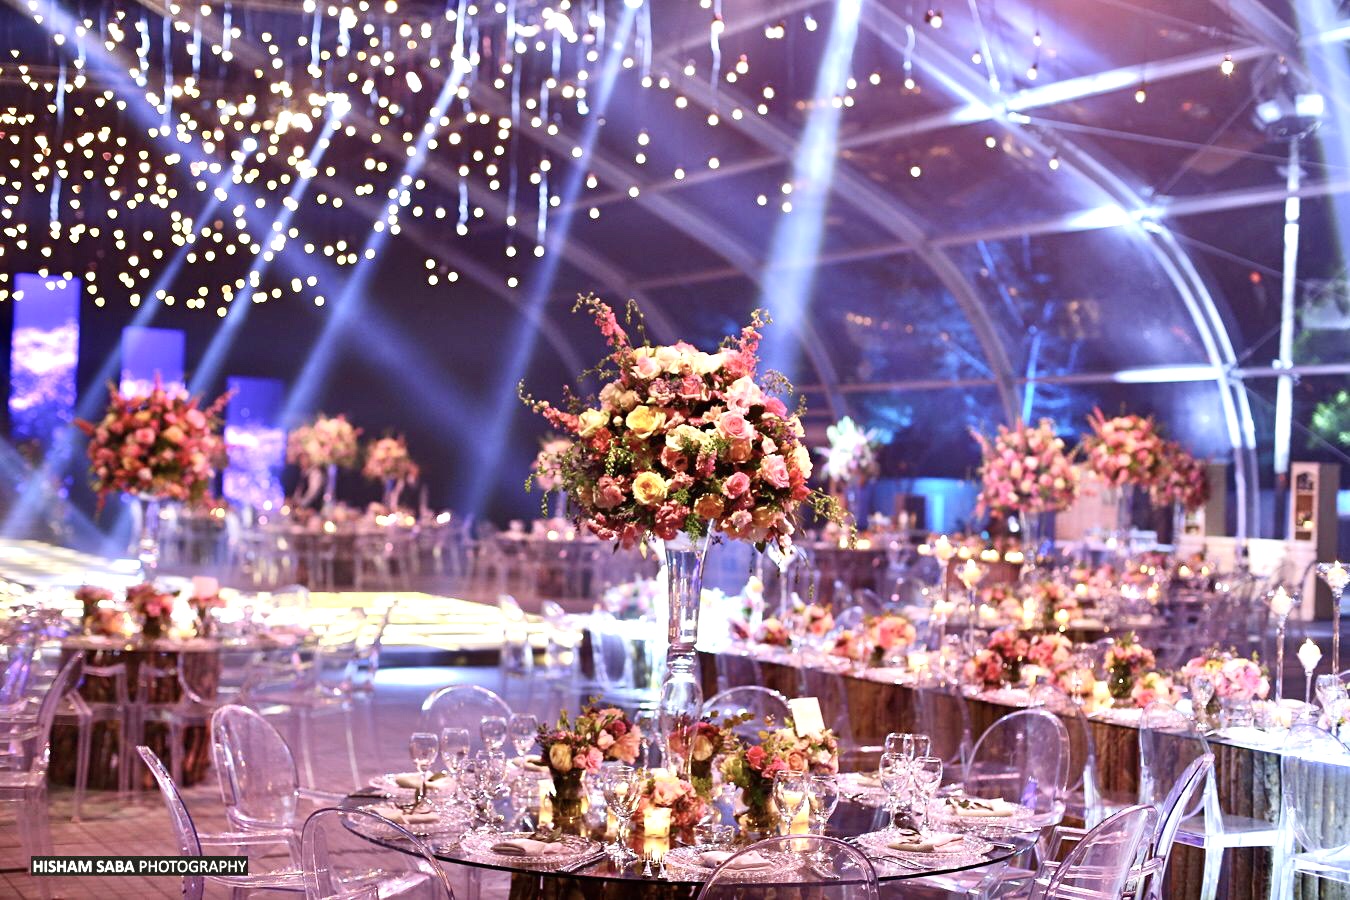 Ein eleganter Festsaal mit runden Tischen an den die Gäste sitzen von oben fotografiert.